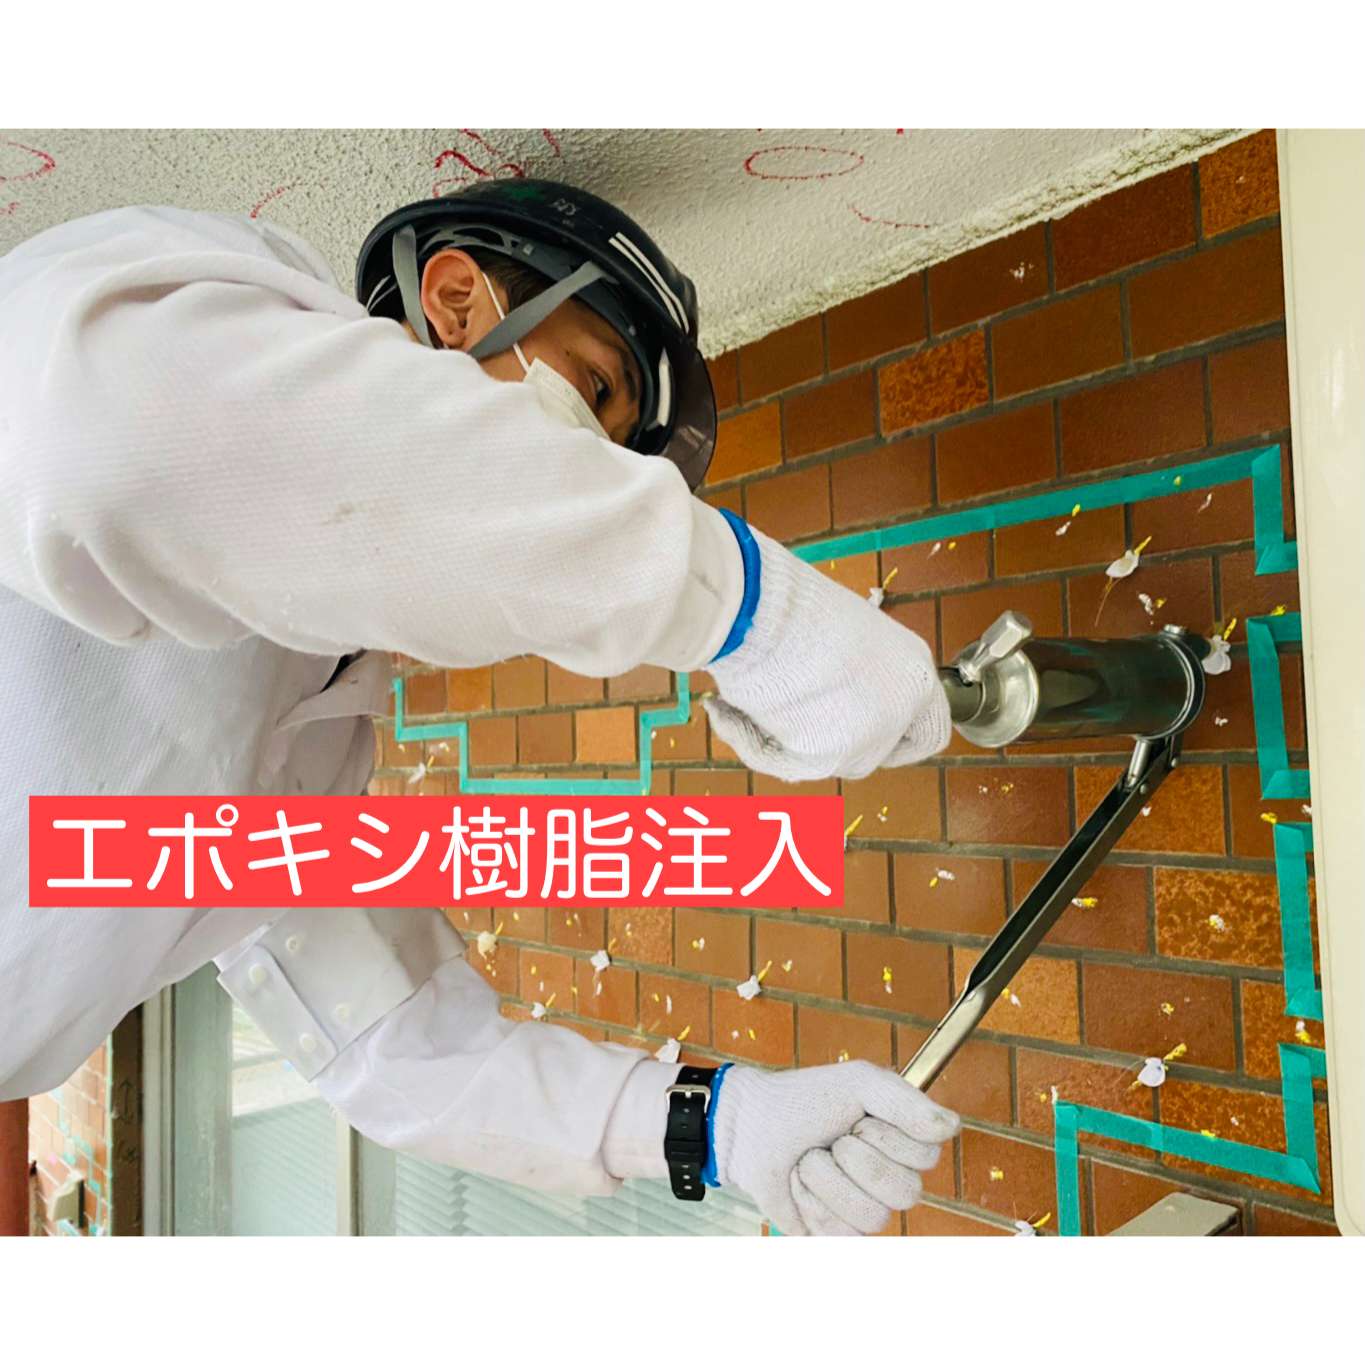 外壁改修工事について【エポキシ樹脂注入】